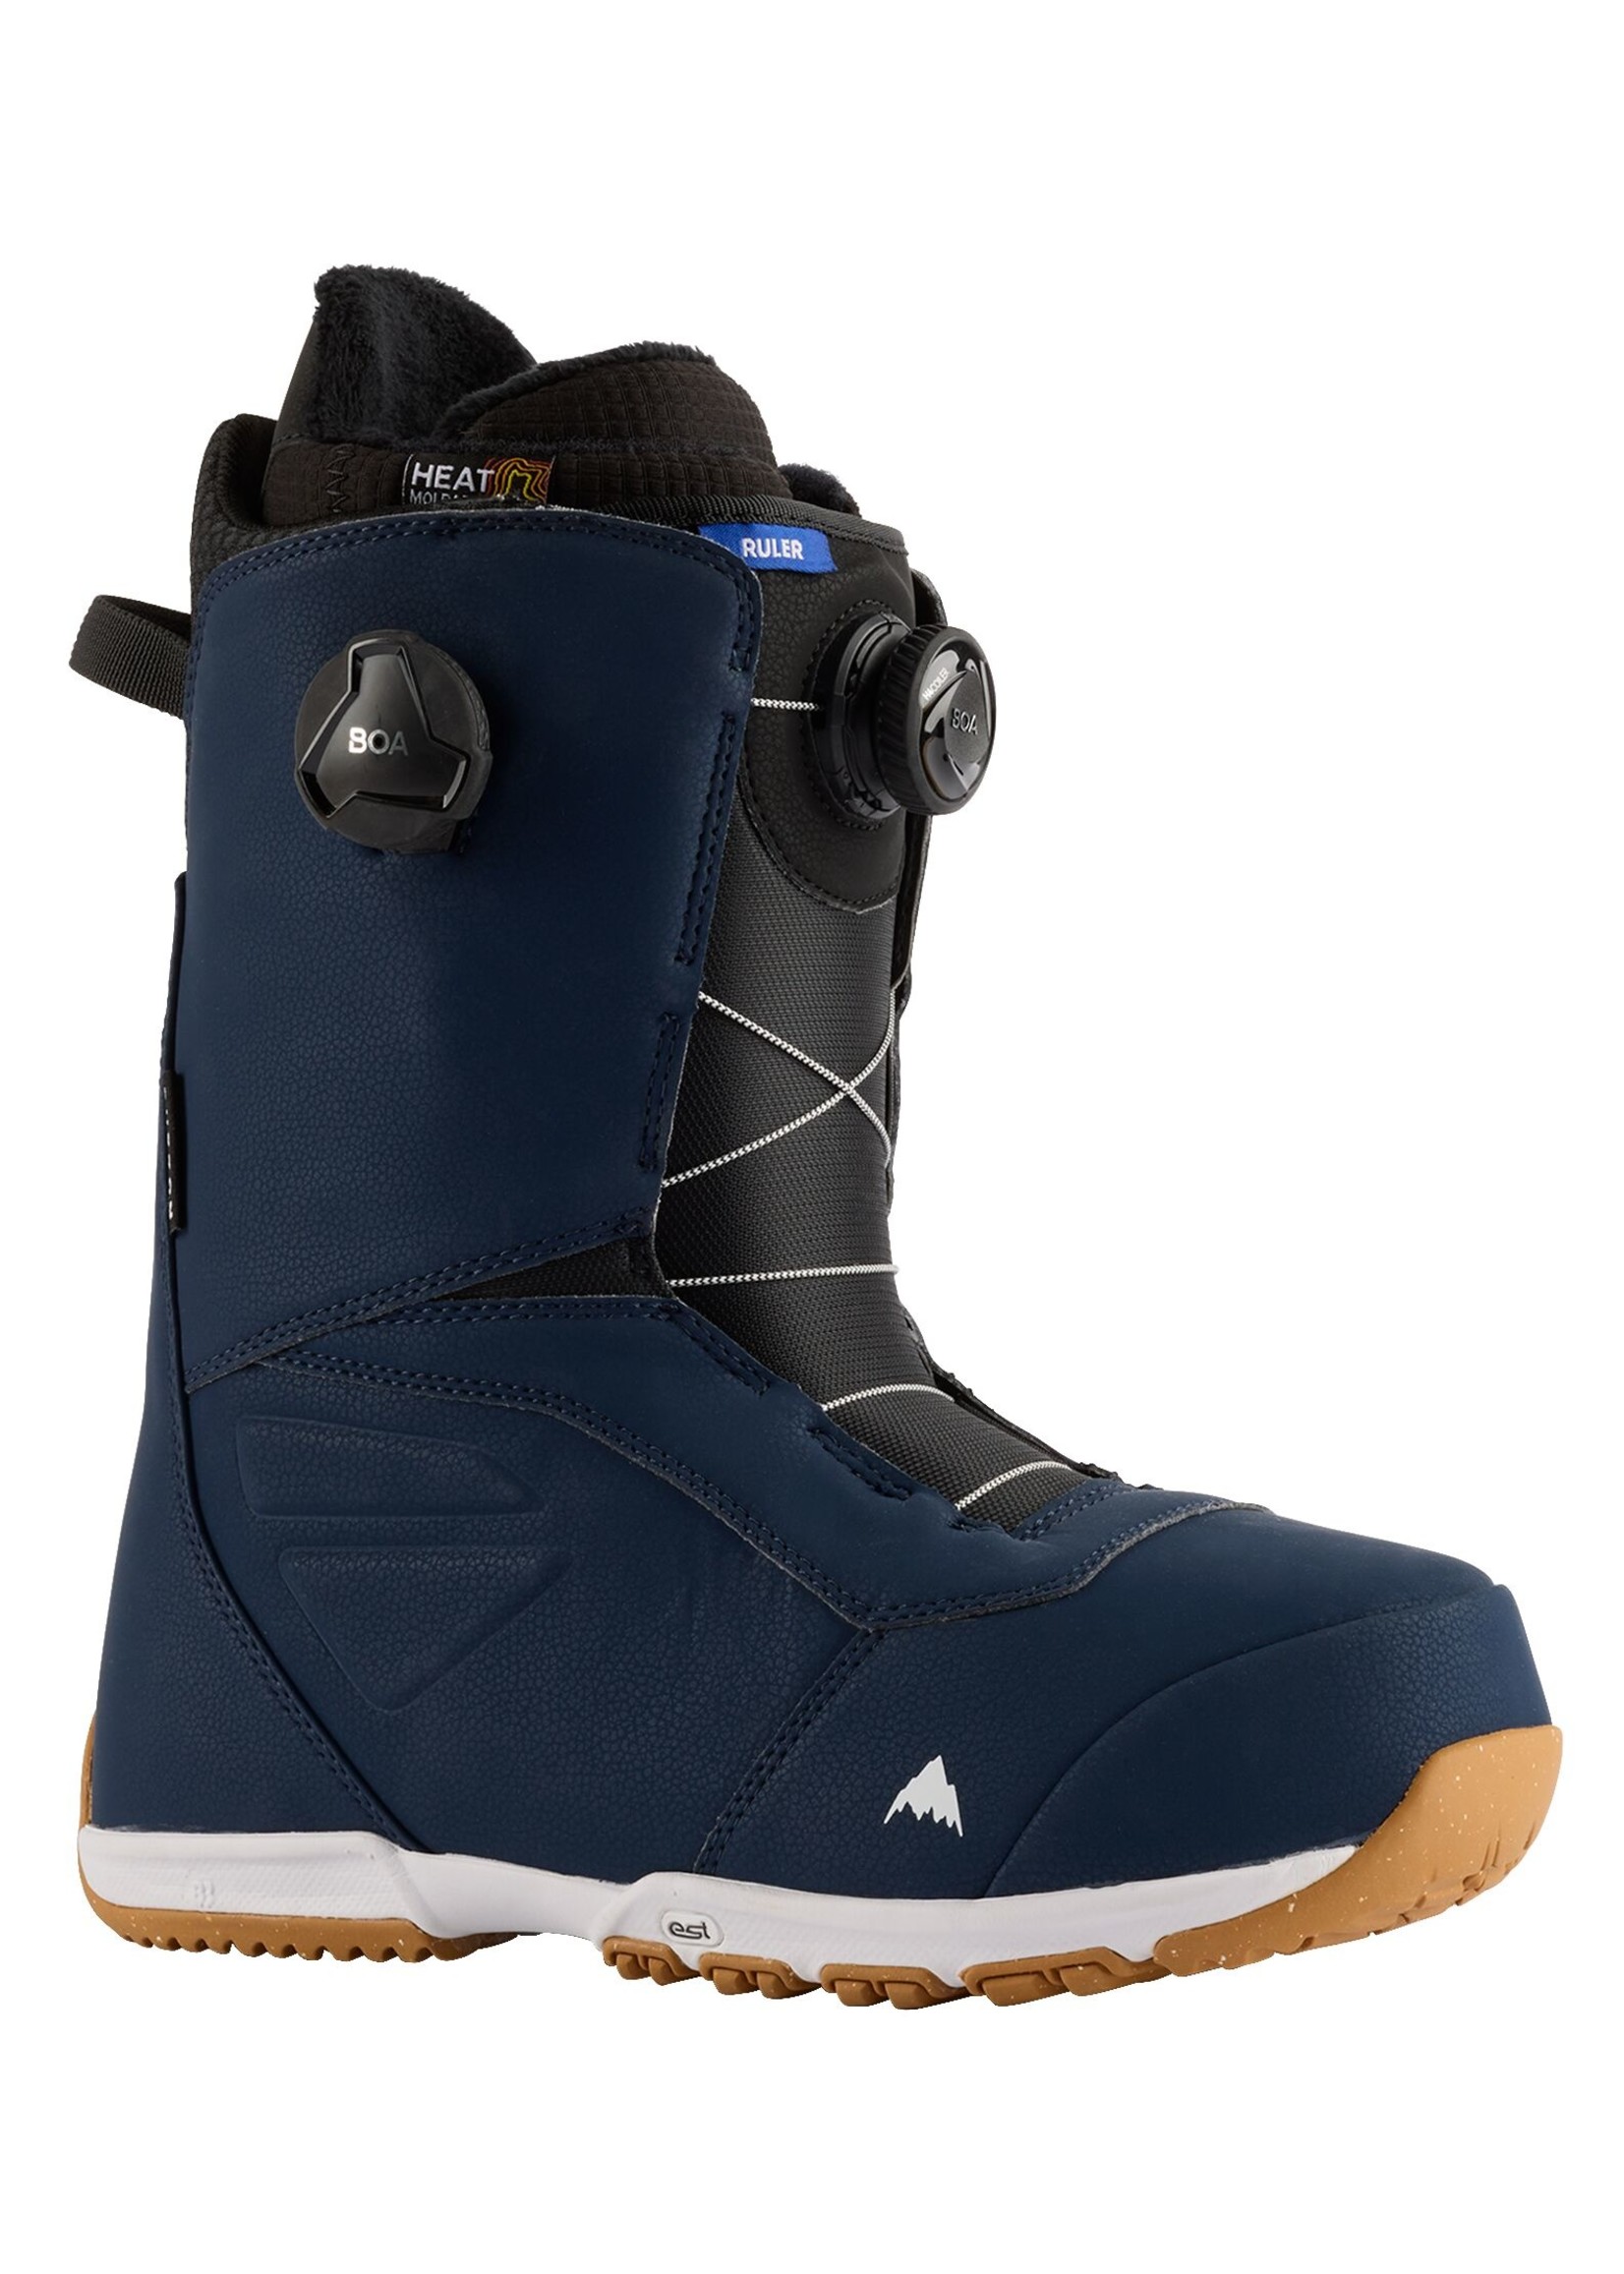 BURTON Men's Ruler BOA® Snowboard Boots